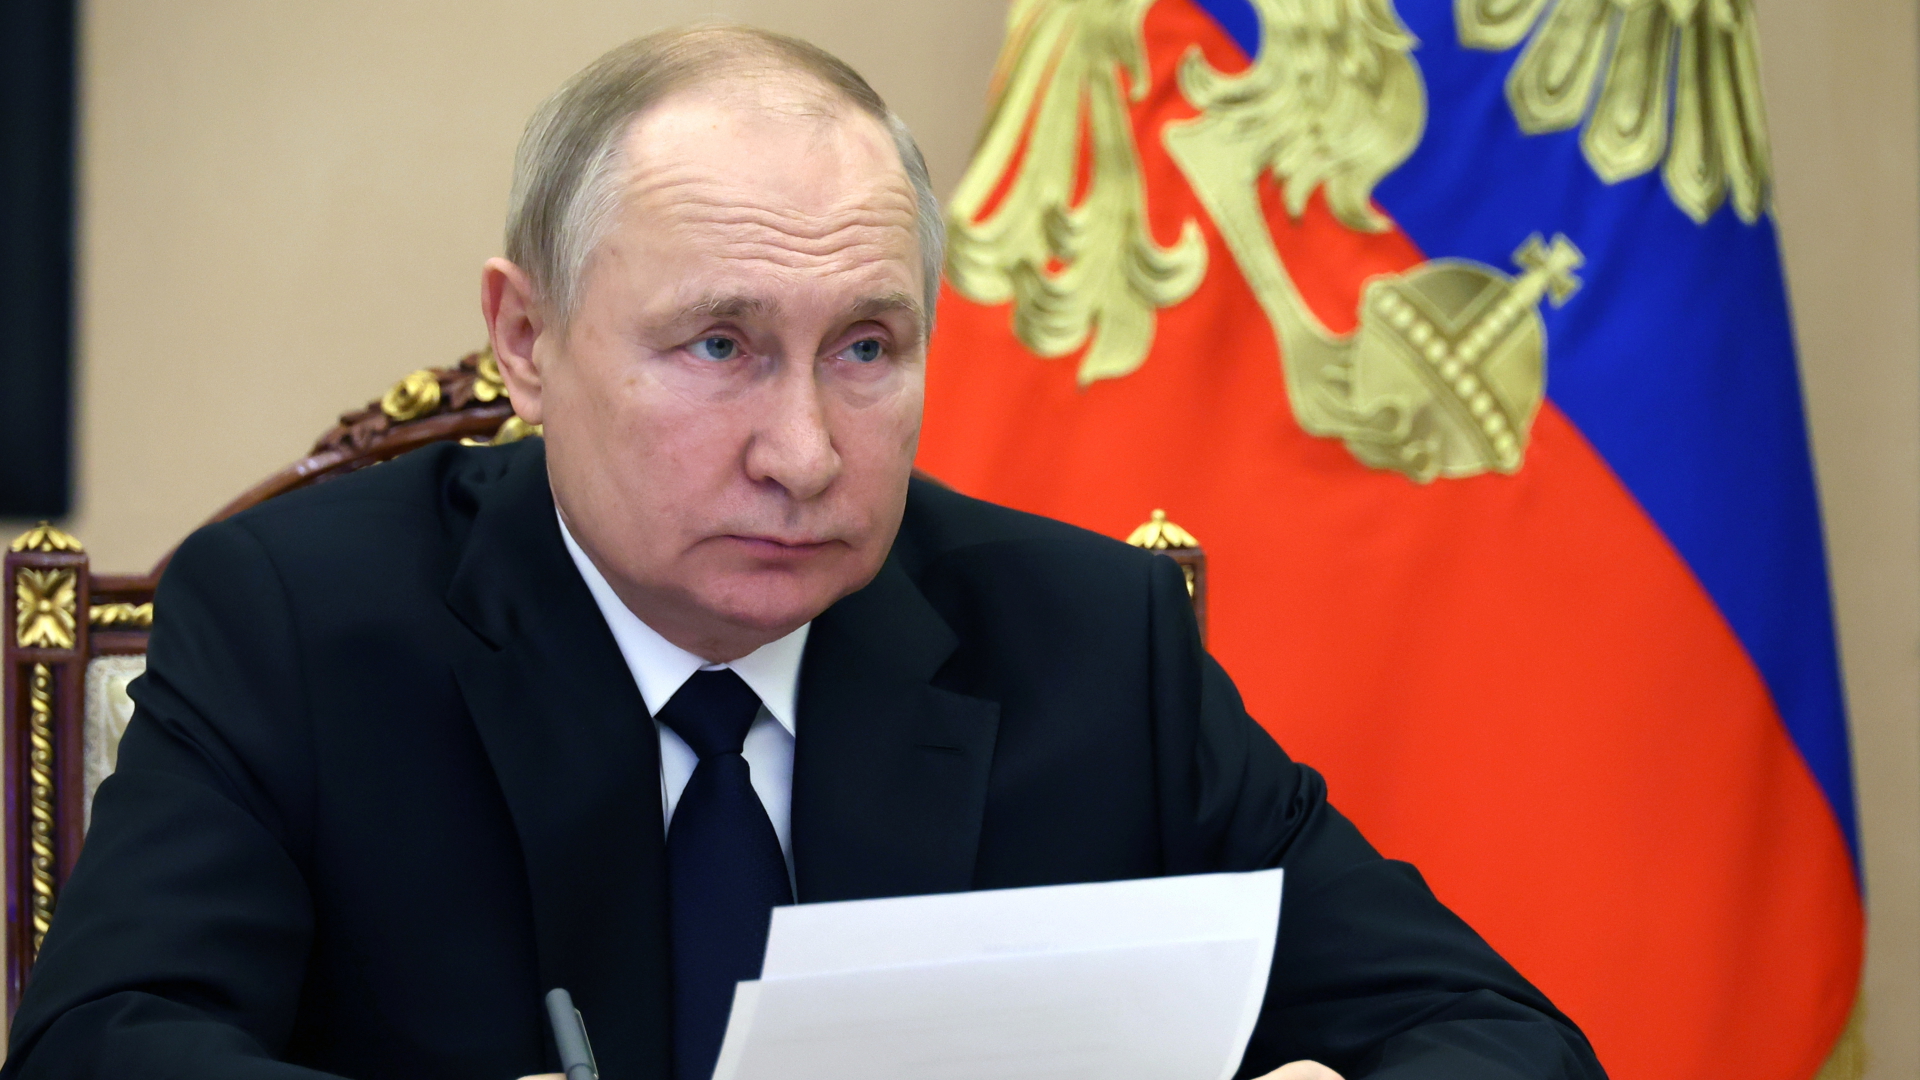 Dieses von der staatlichen russischen Nachrichtenagentur Sputnik via AP veröffentlichte Foto zeigt Wladimir Putin, Präsident von Russland (Archivbild).